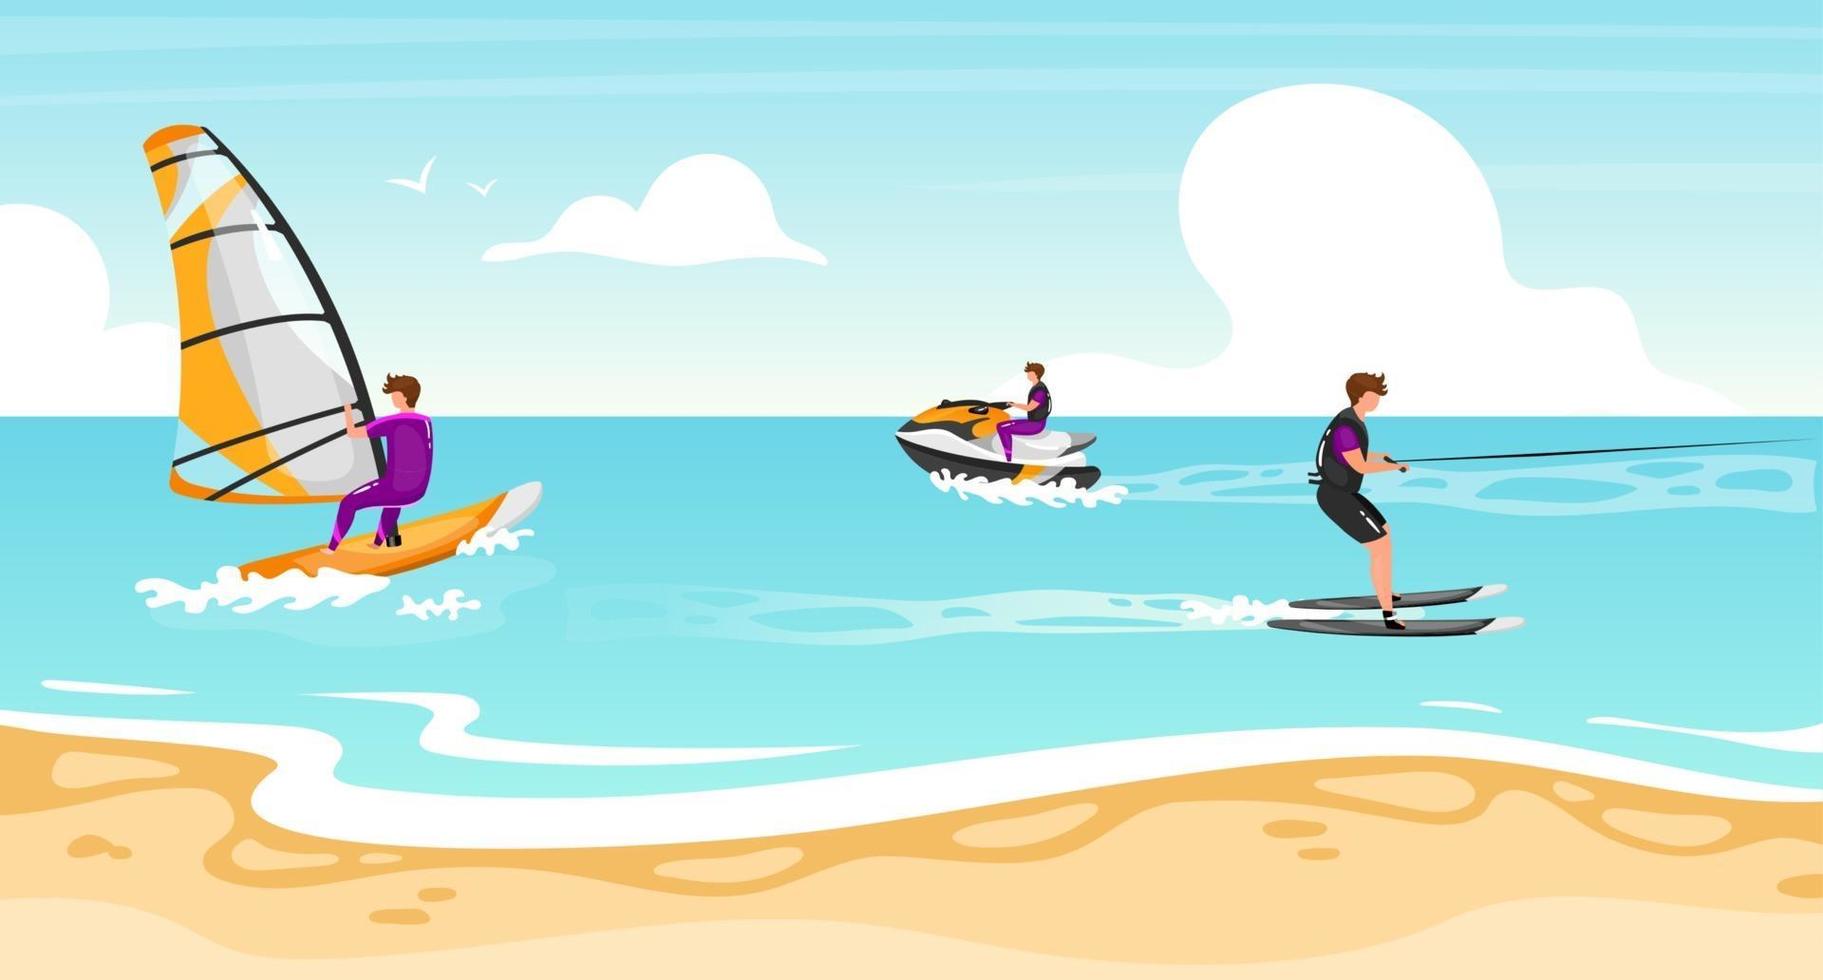 Wassersport flache Vektor-Illustration. Windsurfen, Wasserski-Erfahrung. Sportler auf Wasserscooter aktiven Outdoor-Lifestyle. tropische Küste, türkisfarbene Wasserlandschaft. Sportler Zeichentrickfiguren vektor